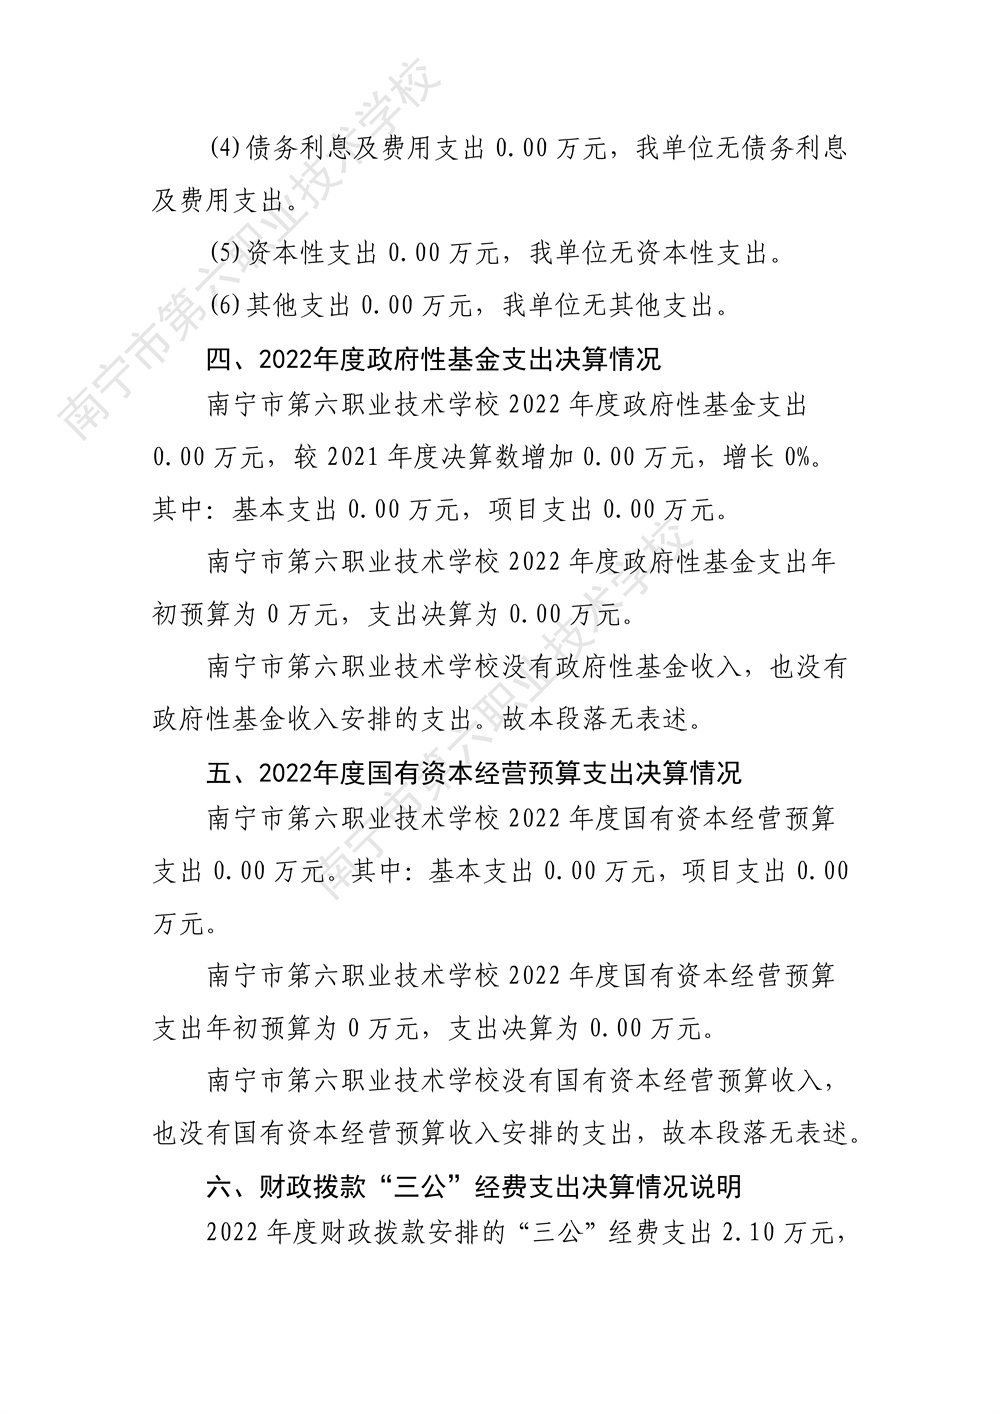 南宁市第六职业技术学校2022年度部门决算公开（终版）_32.jpg